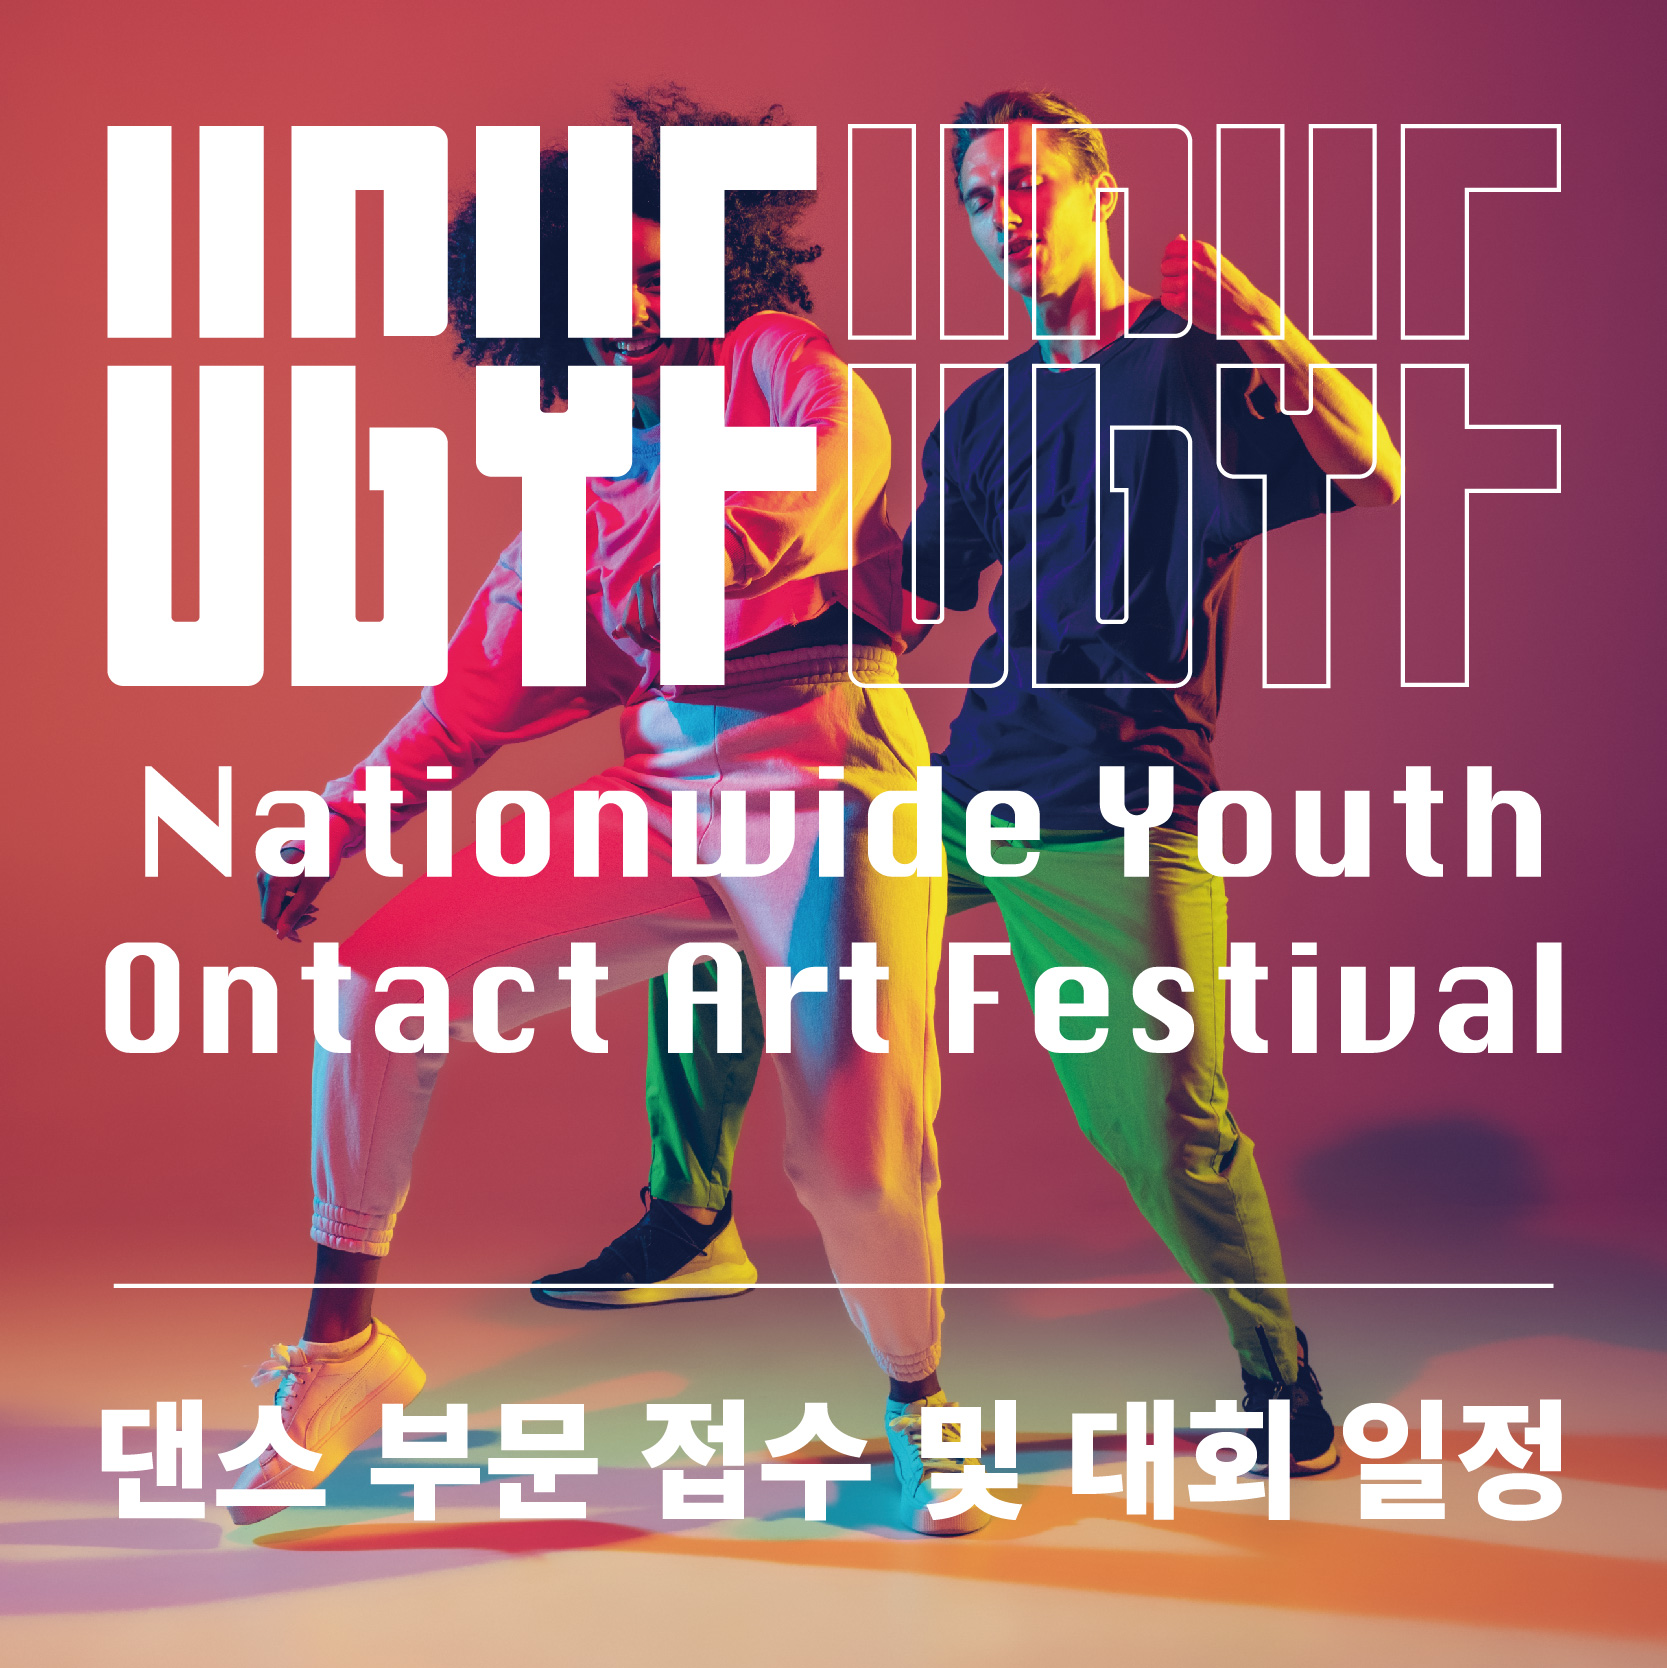 16th 공업탑청소년예술제 Nationwide Youth Ontact Art Festival “U.G.Y.F”(댄스)